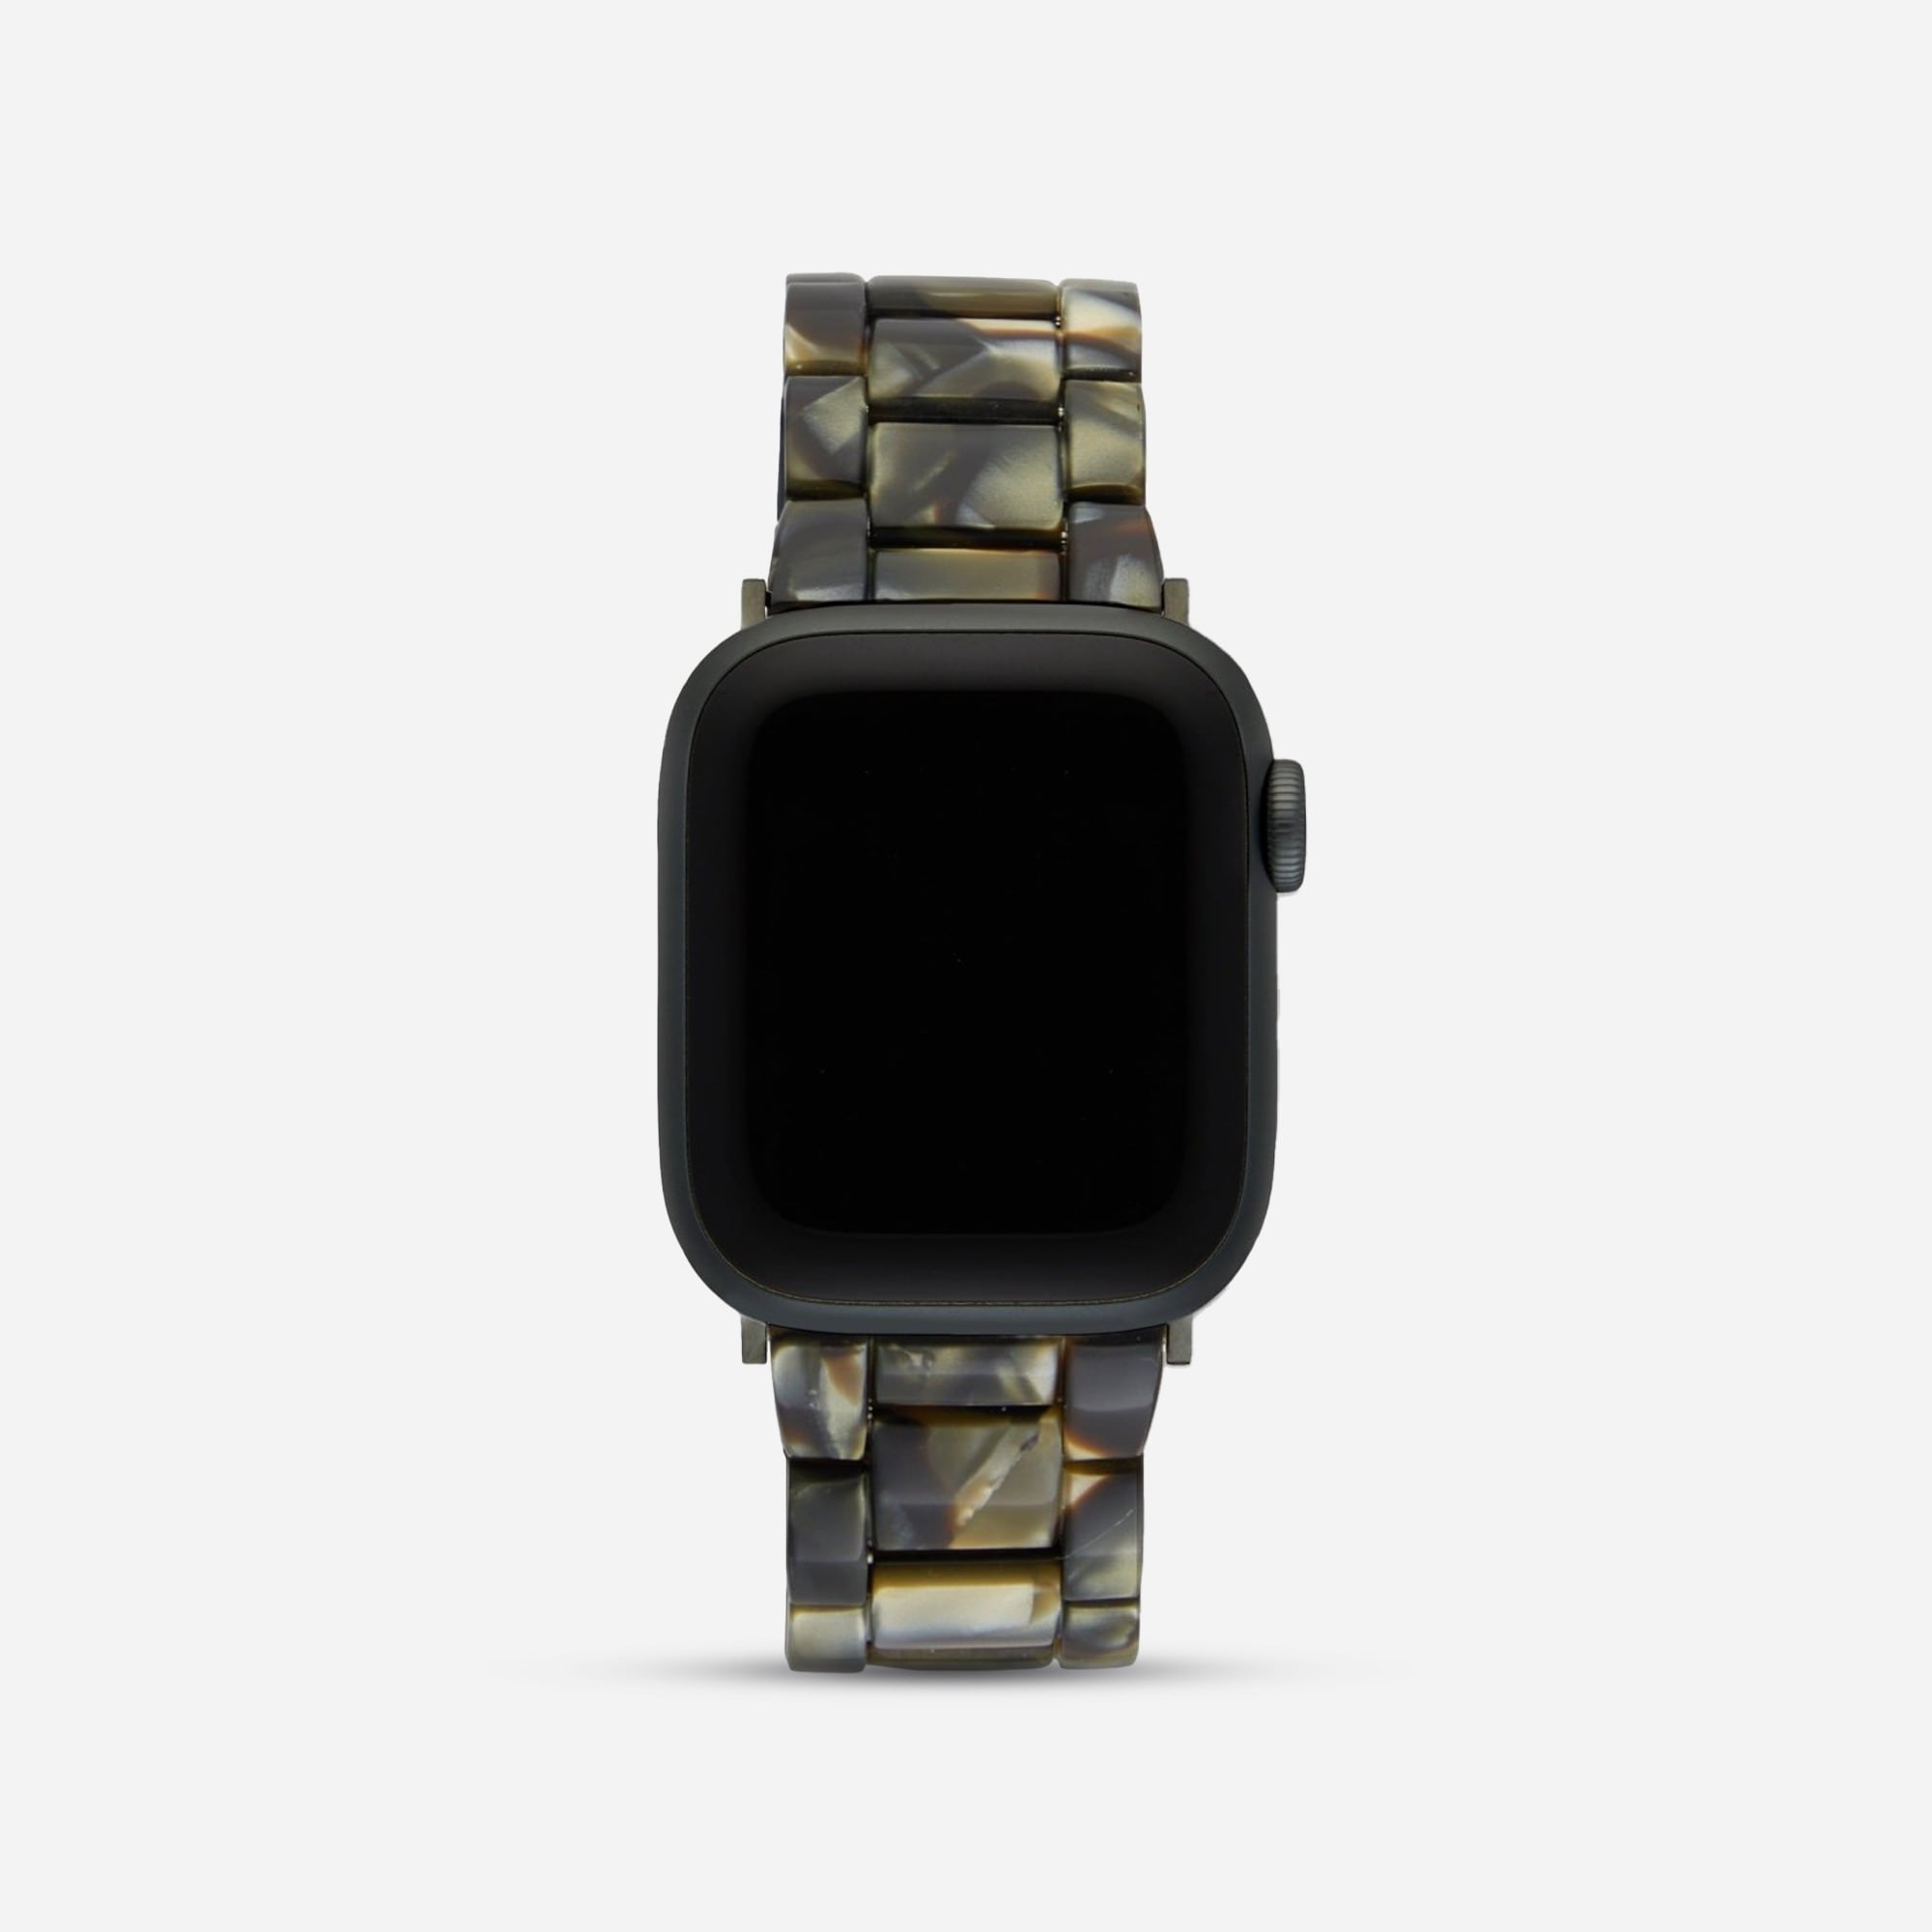 Jcrew MACHETE Apple Watch band in universal fit